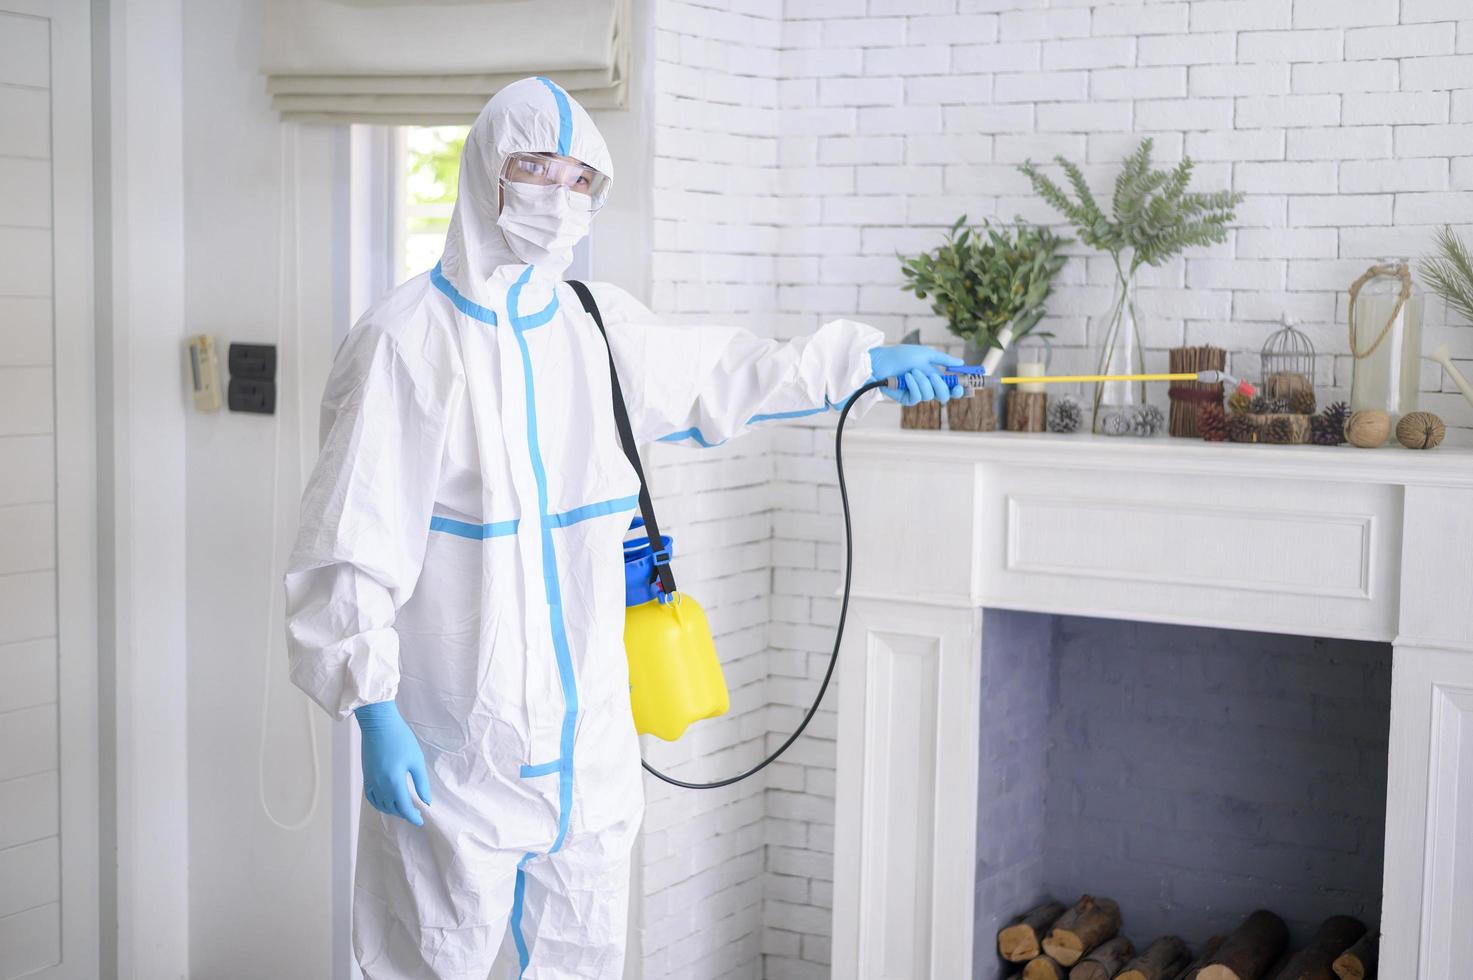 uma equipe médica em traje de EPI está usando spray desinfetante na sala de estar, proteção covid-19, conceito de desinfecção. foto